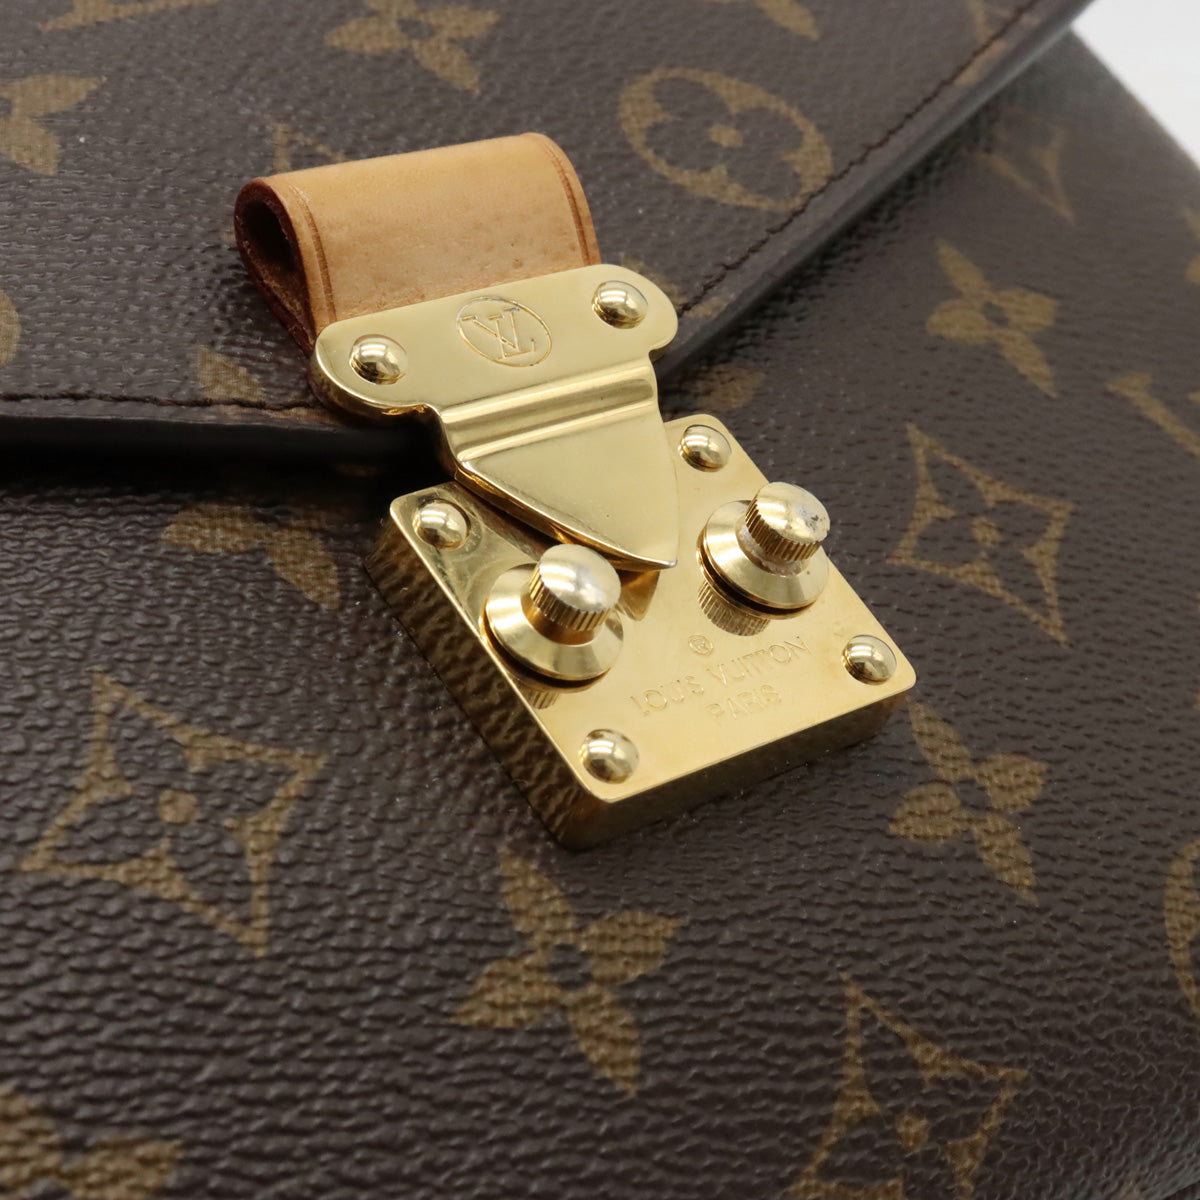 Louis Vuitton Monogram  Metis MM Handbag 2WAY Shoulder Bag M44875 by Louis Vuitton